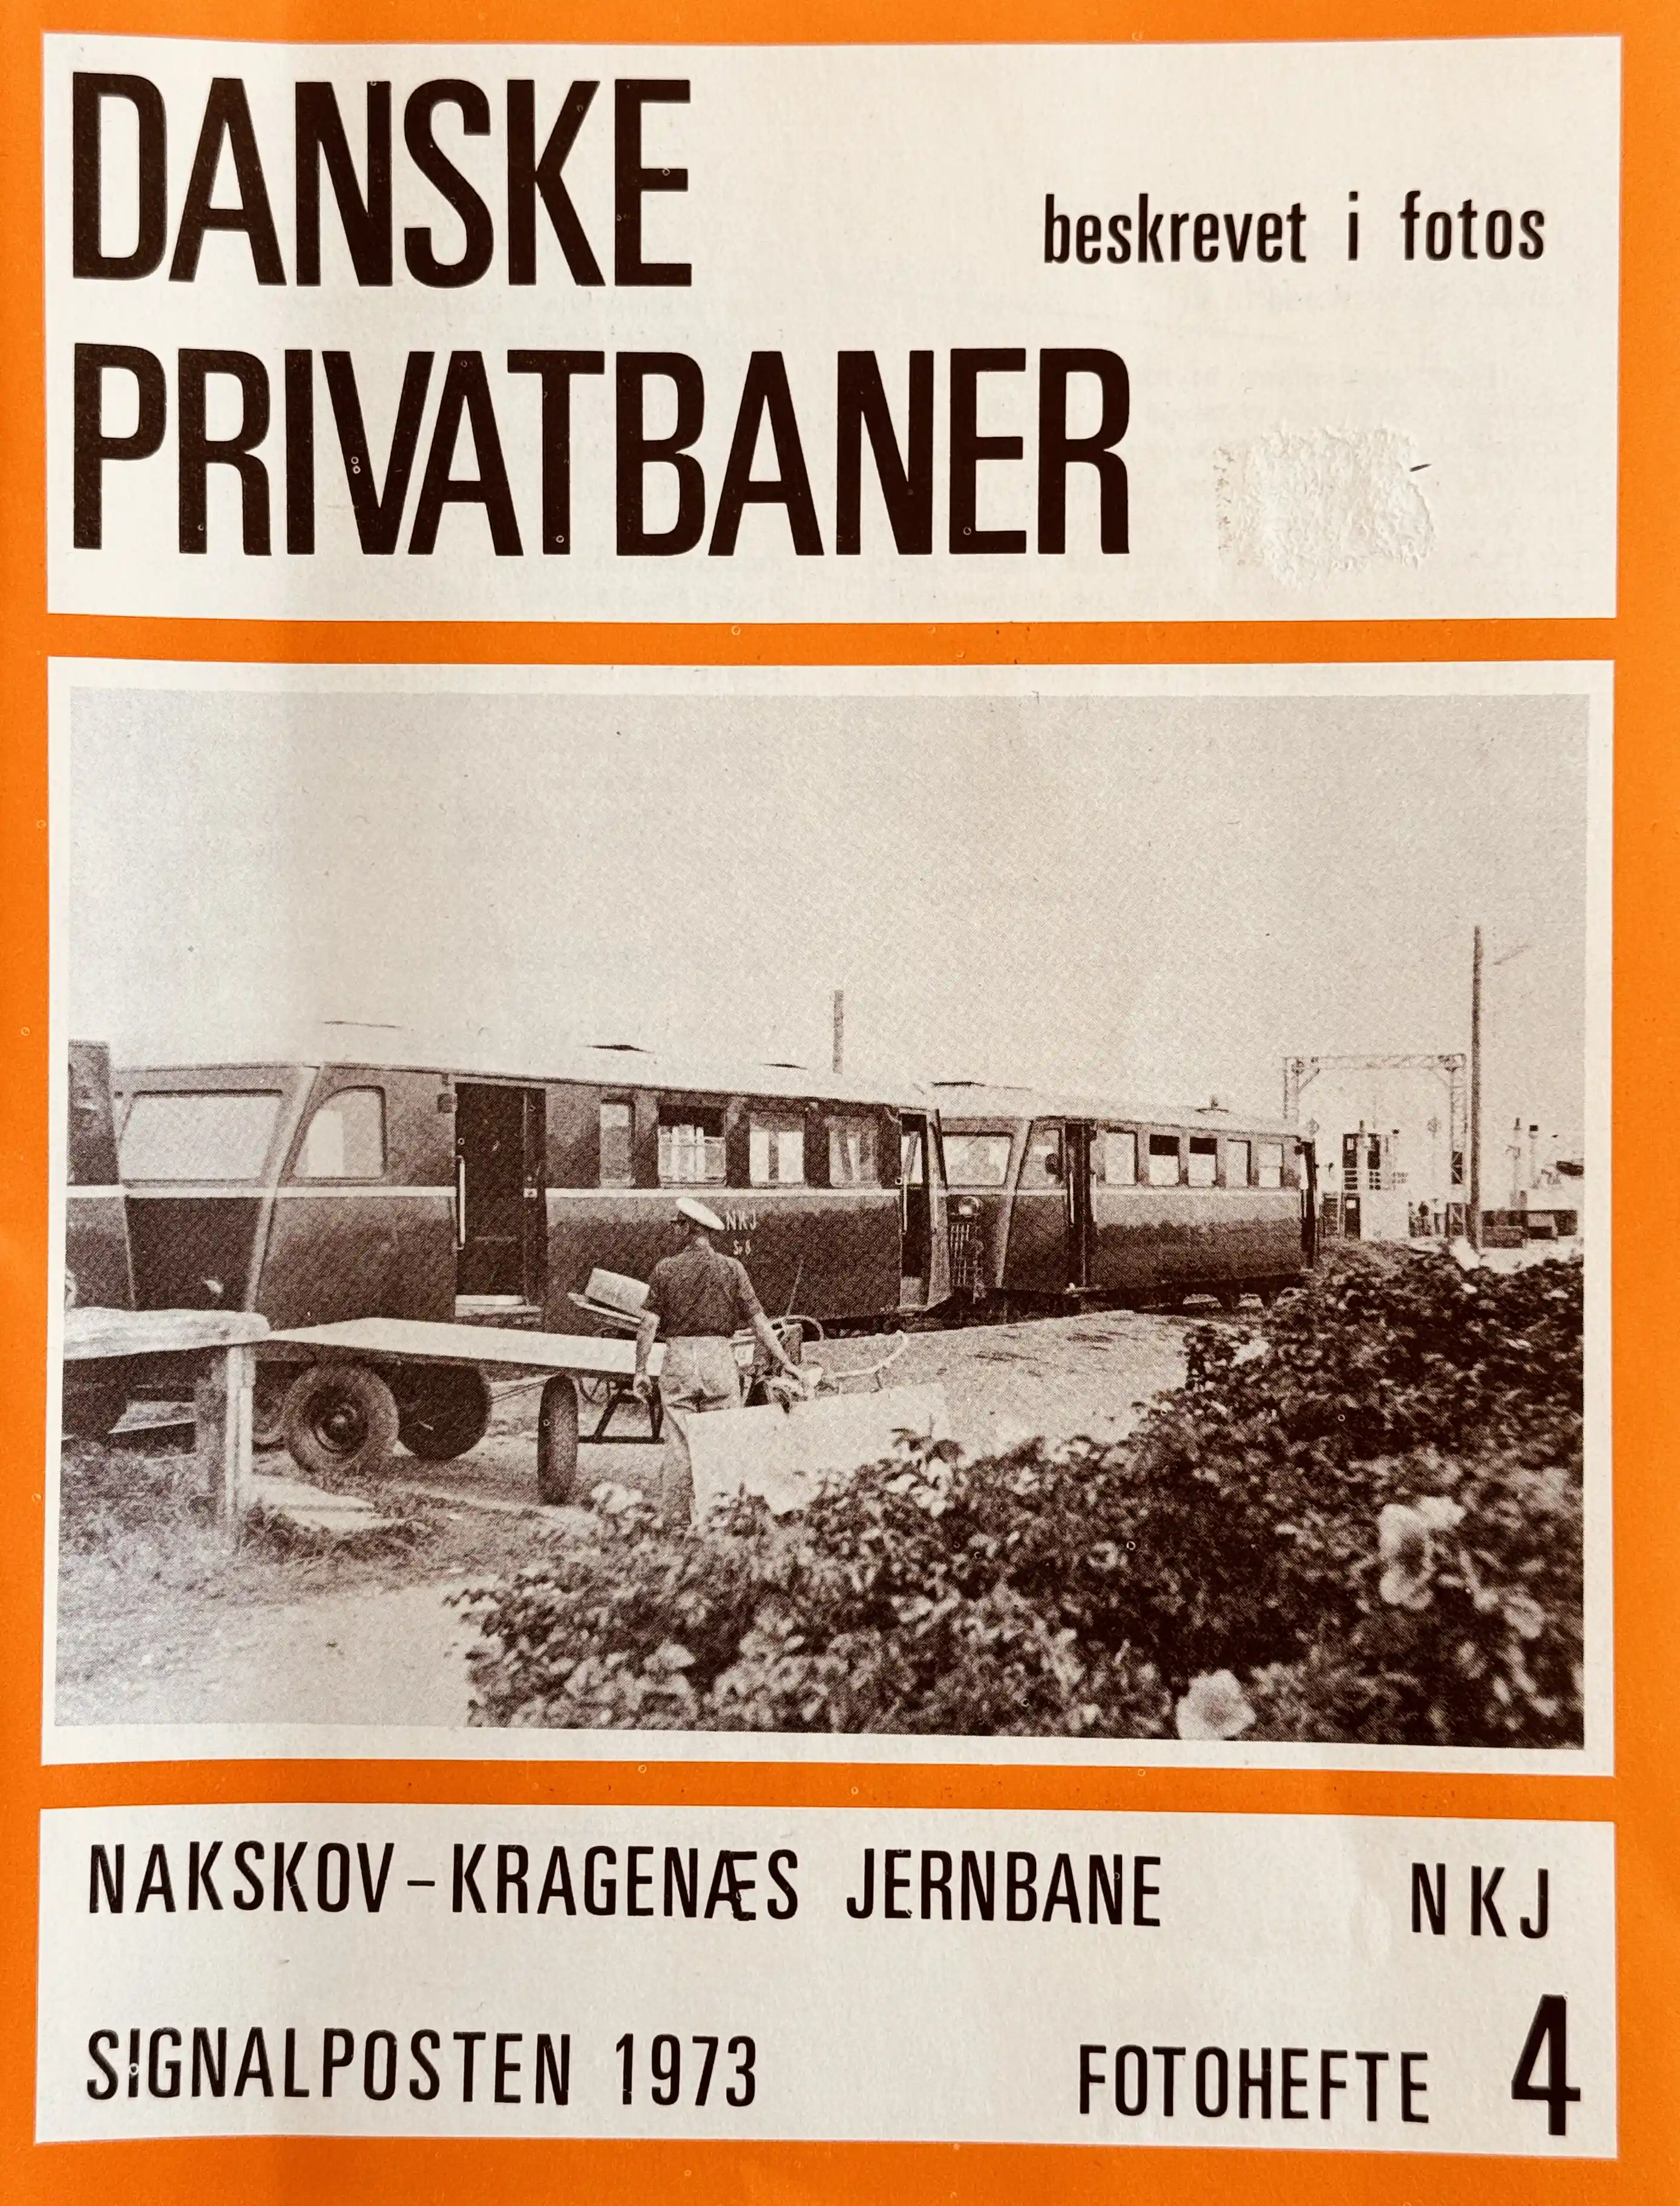 Danske Privatbaner beskrevet i fotos - Fotohæfte 4: Nakskov-Kragenæs Jernbane